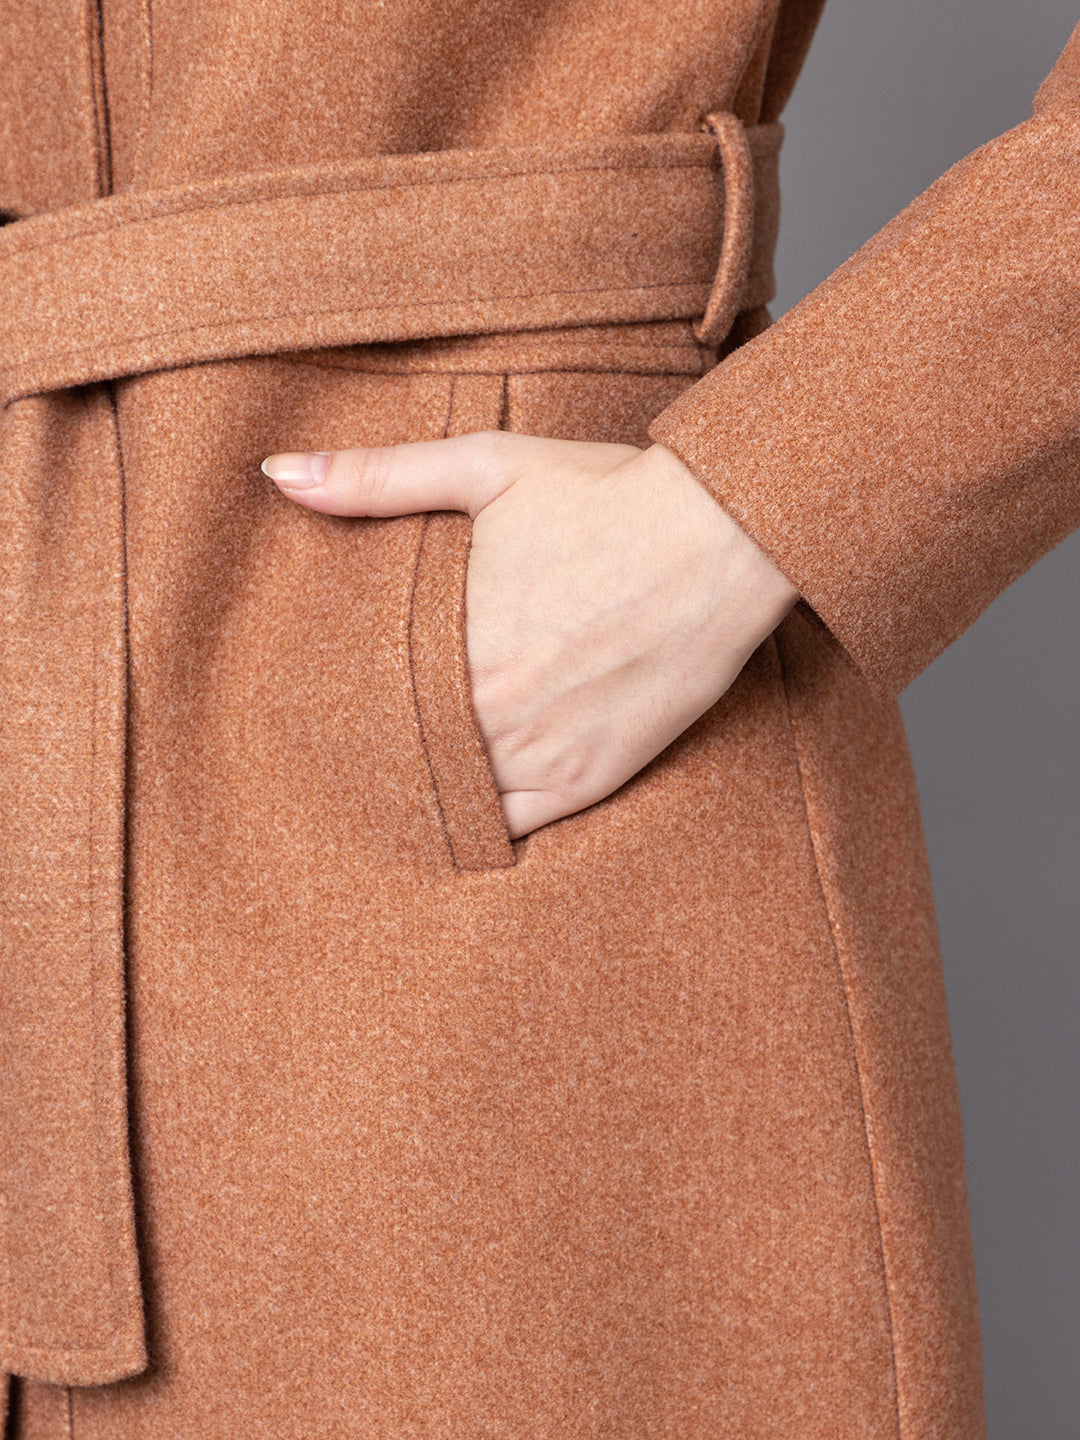 Women Belted Single-Breasted Woolen Overcoat